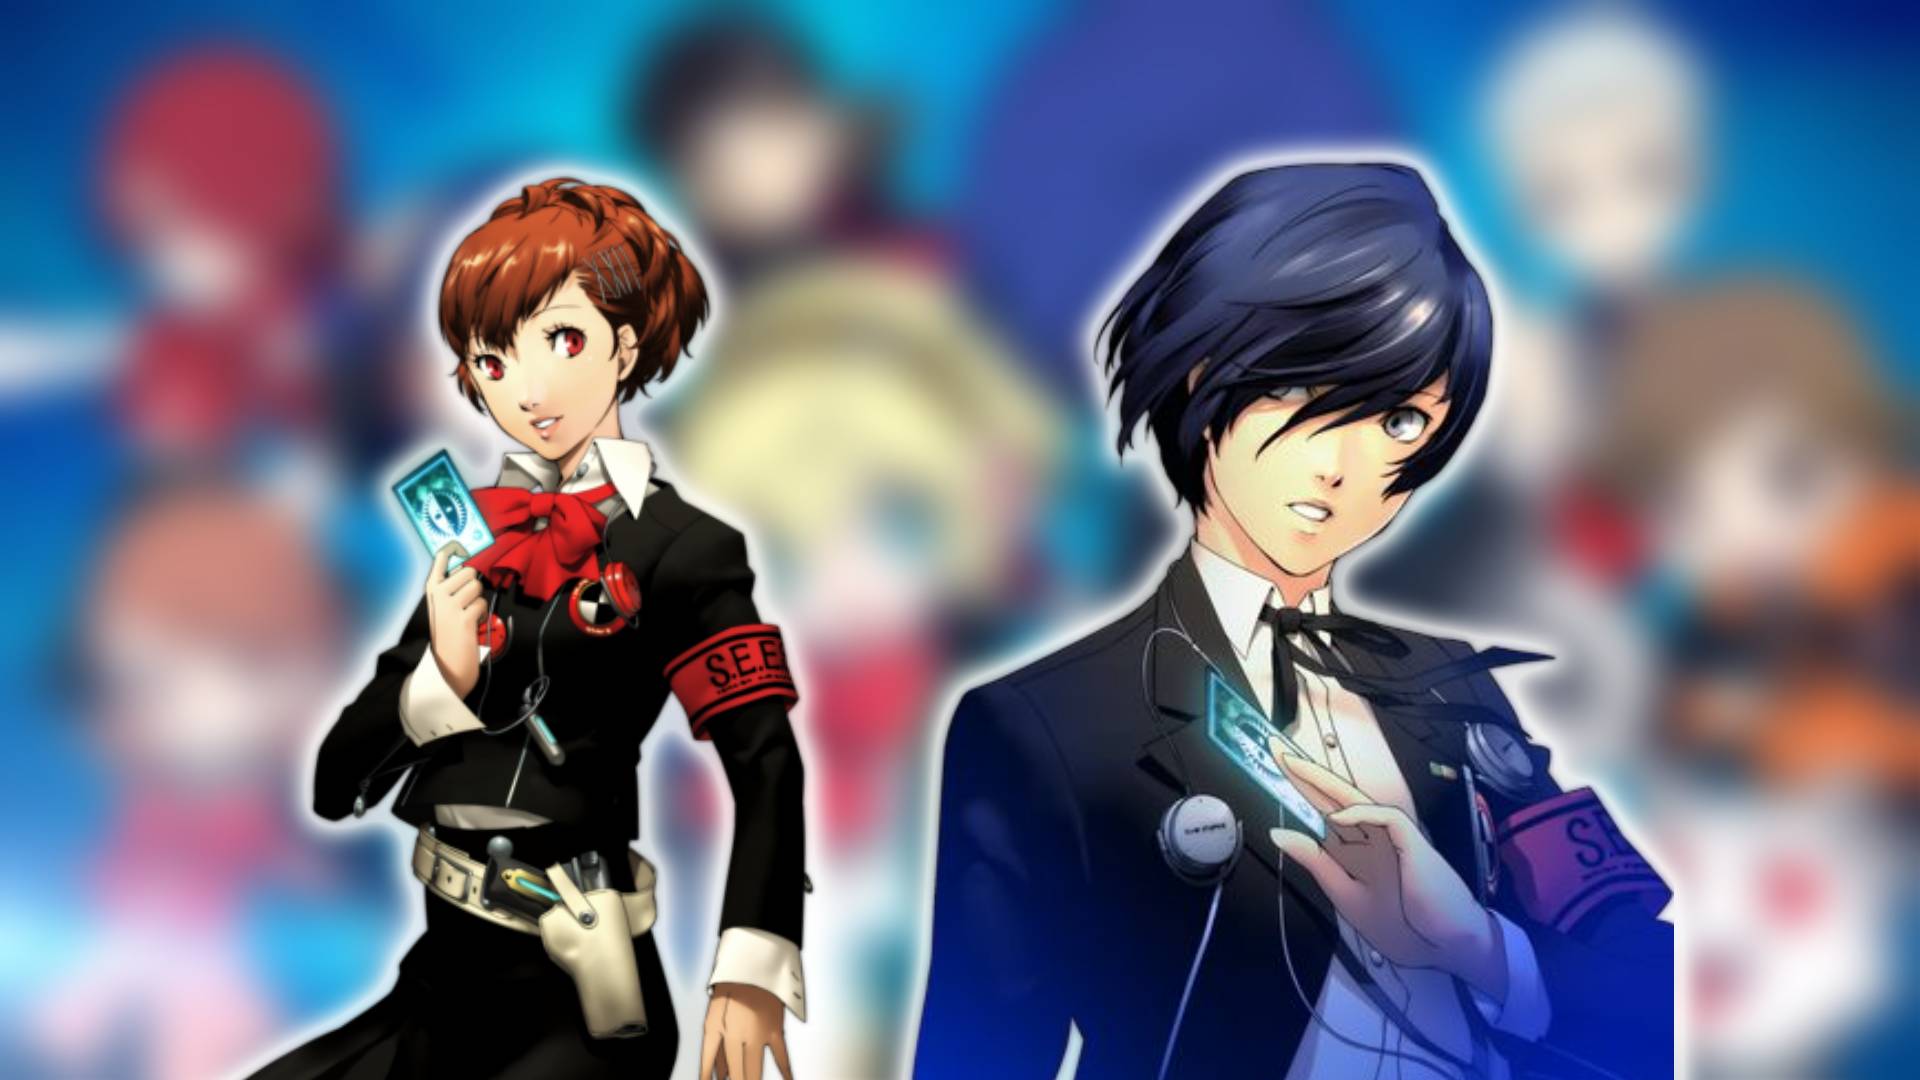 Persona 3 personagens: os protagonistas masculinos e femininos de Persona 3 Portable são visíveis